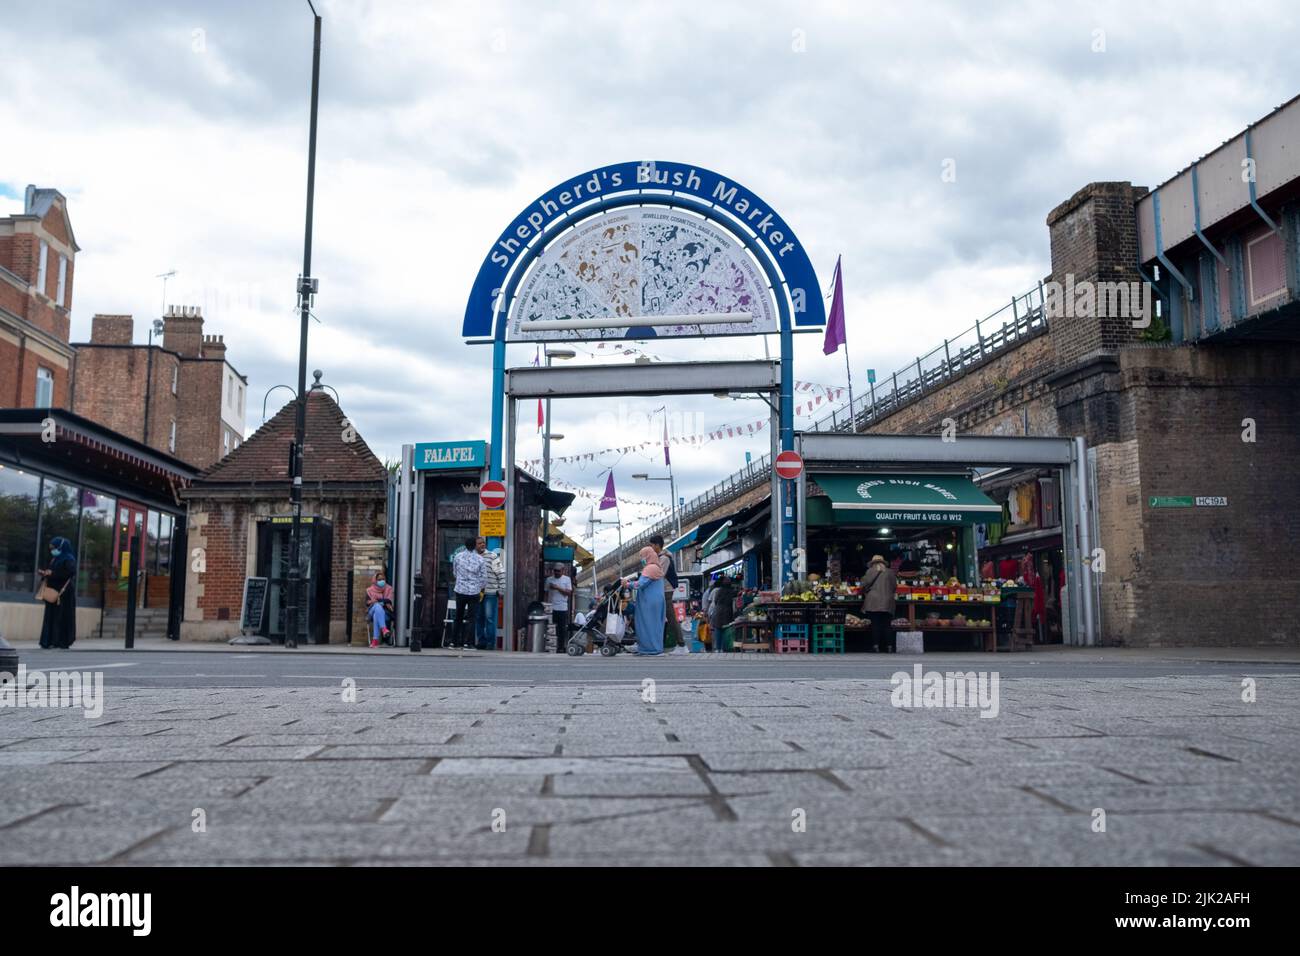 Londra, 2022 luglio: Shepherds Bush Market a West London. Un vecchio mercato vicino alla linea metropolitana Hammersmith & City. Foto Stock